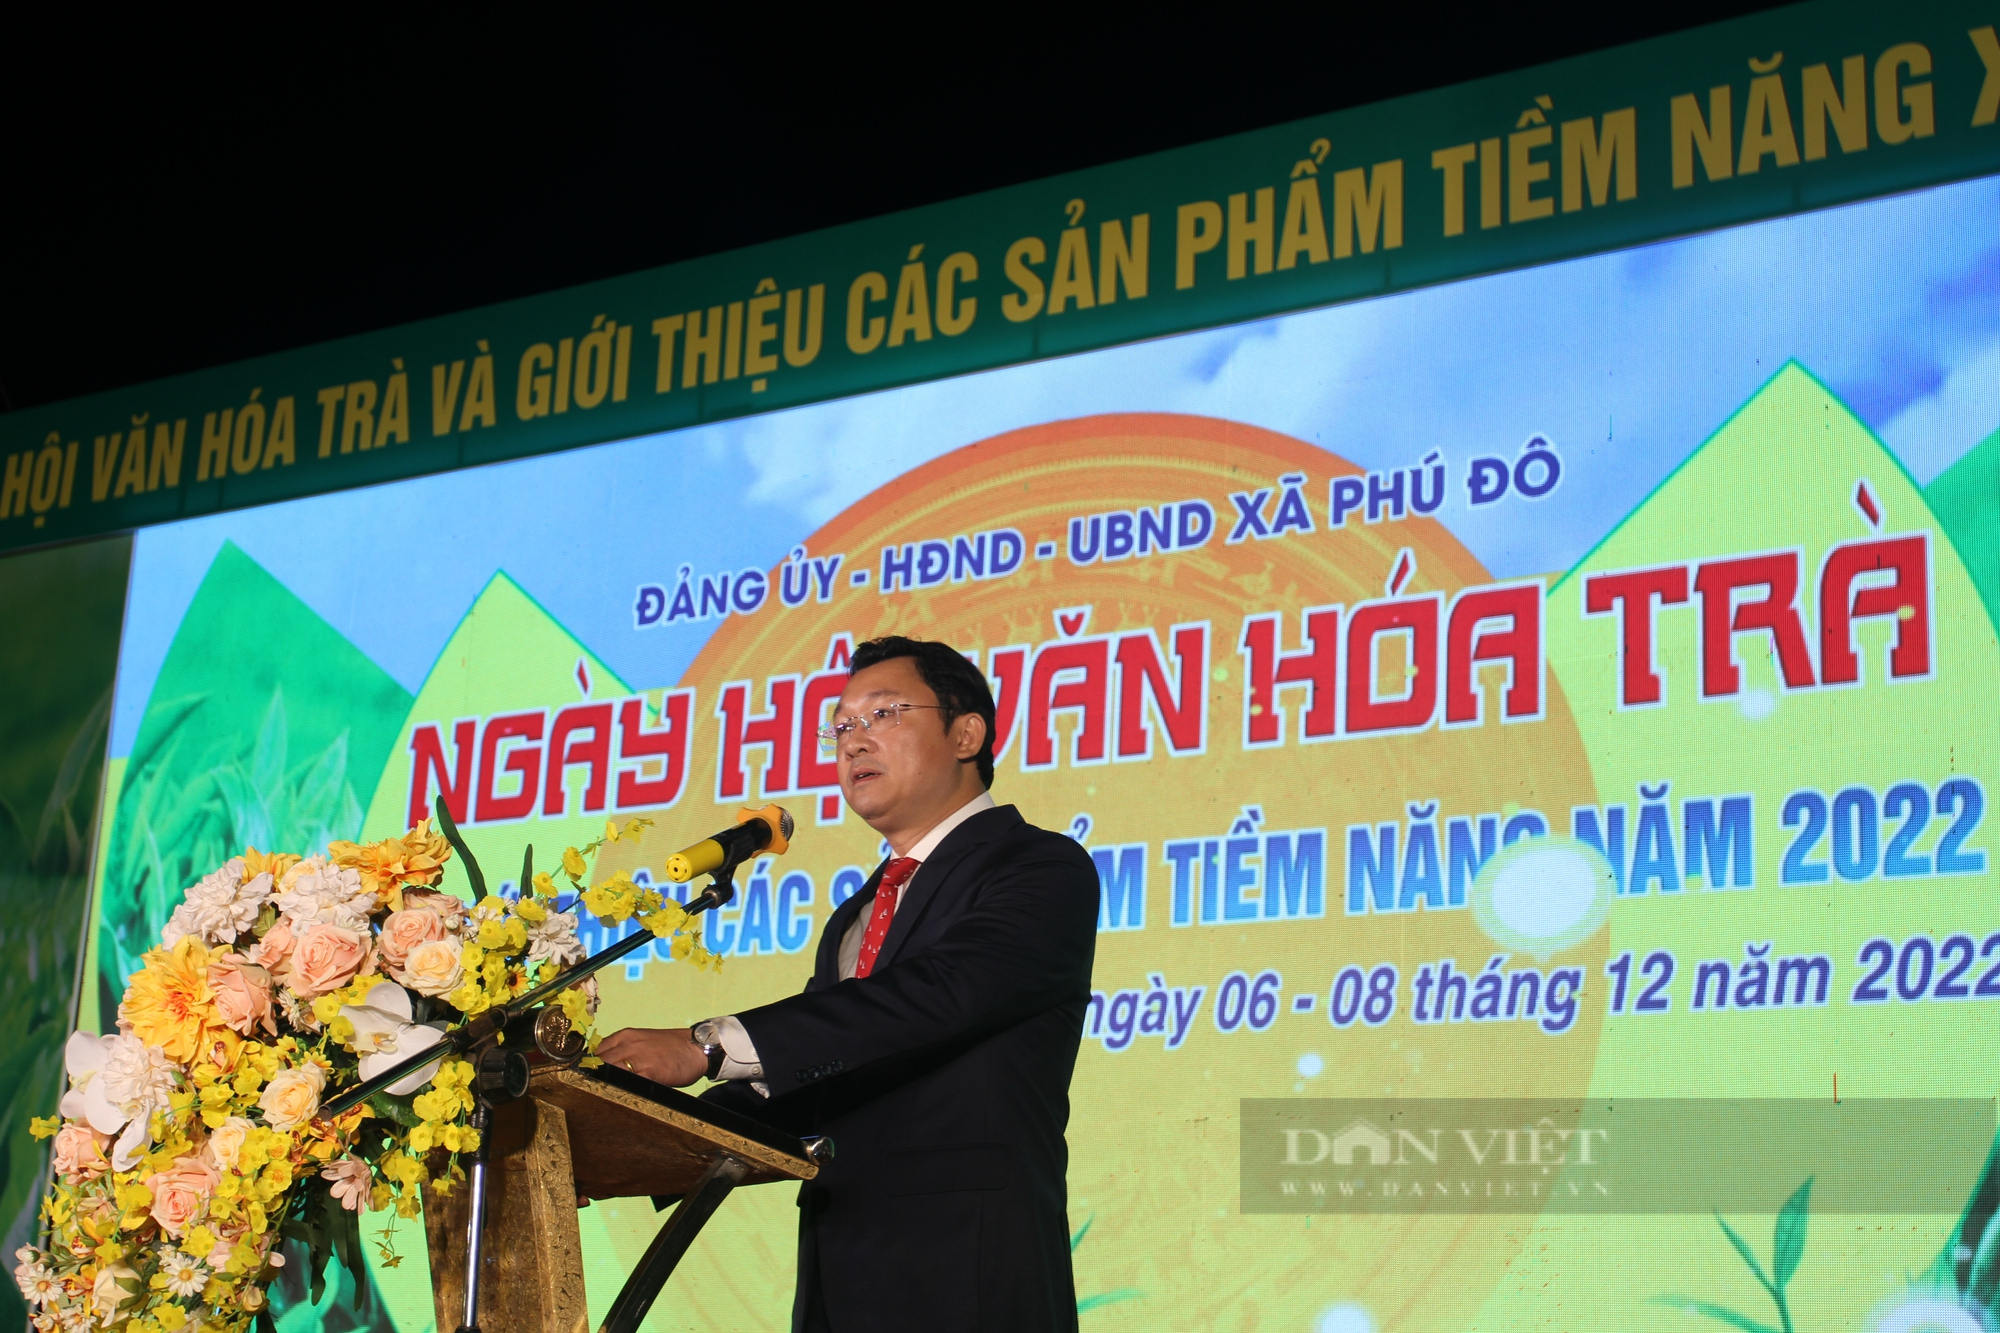 Thái Nguyên: Tưng bừng ngày Hội văn hóa trà và giới thiệu các sản phẩm tiềm năng thế mạnh năm 2022 - Ảnh 5.